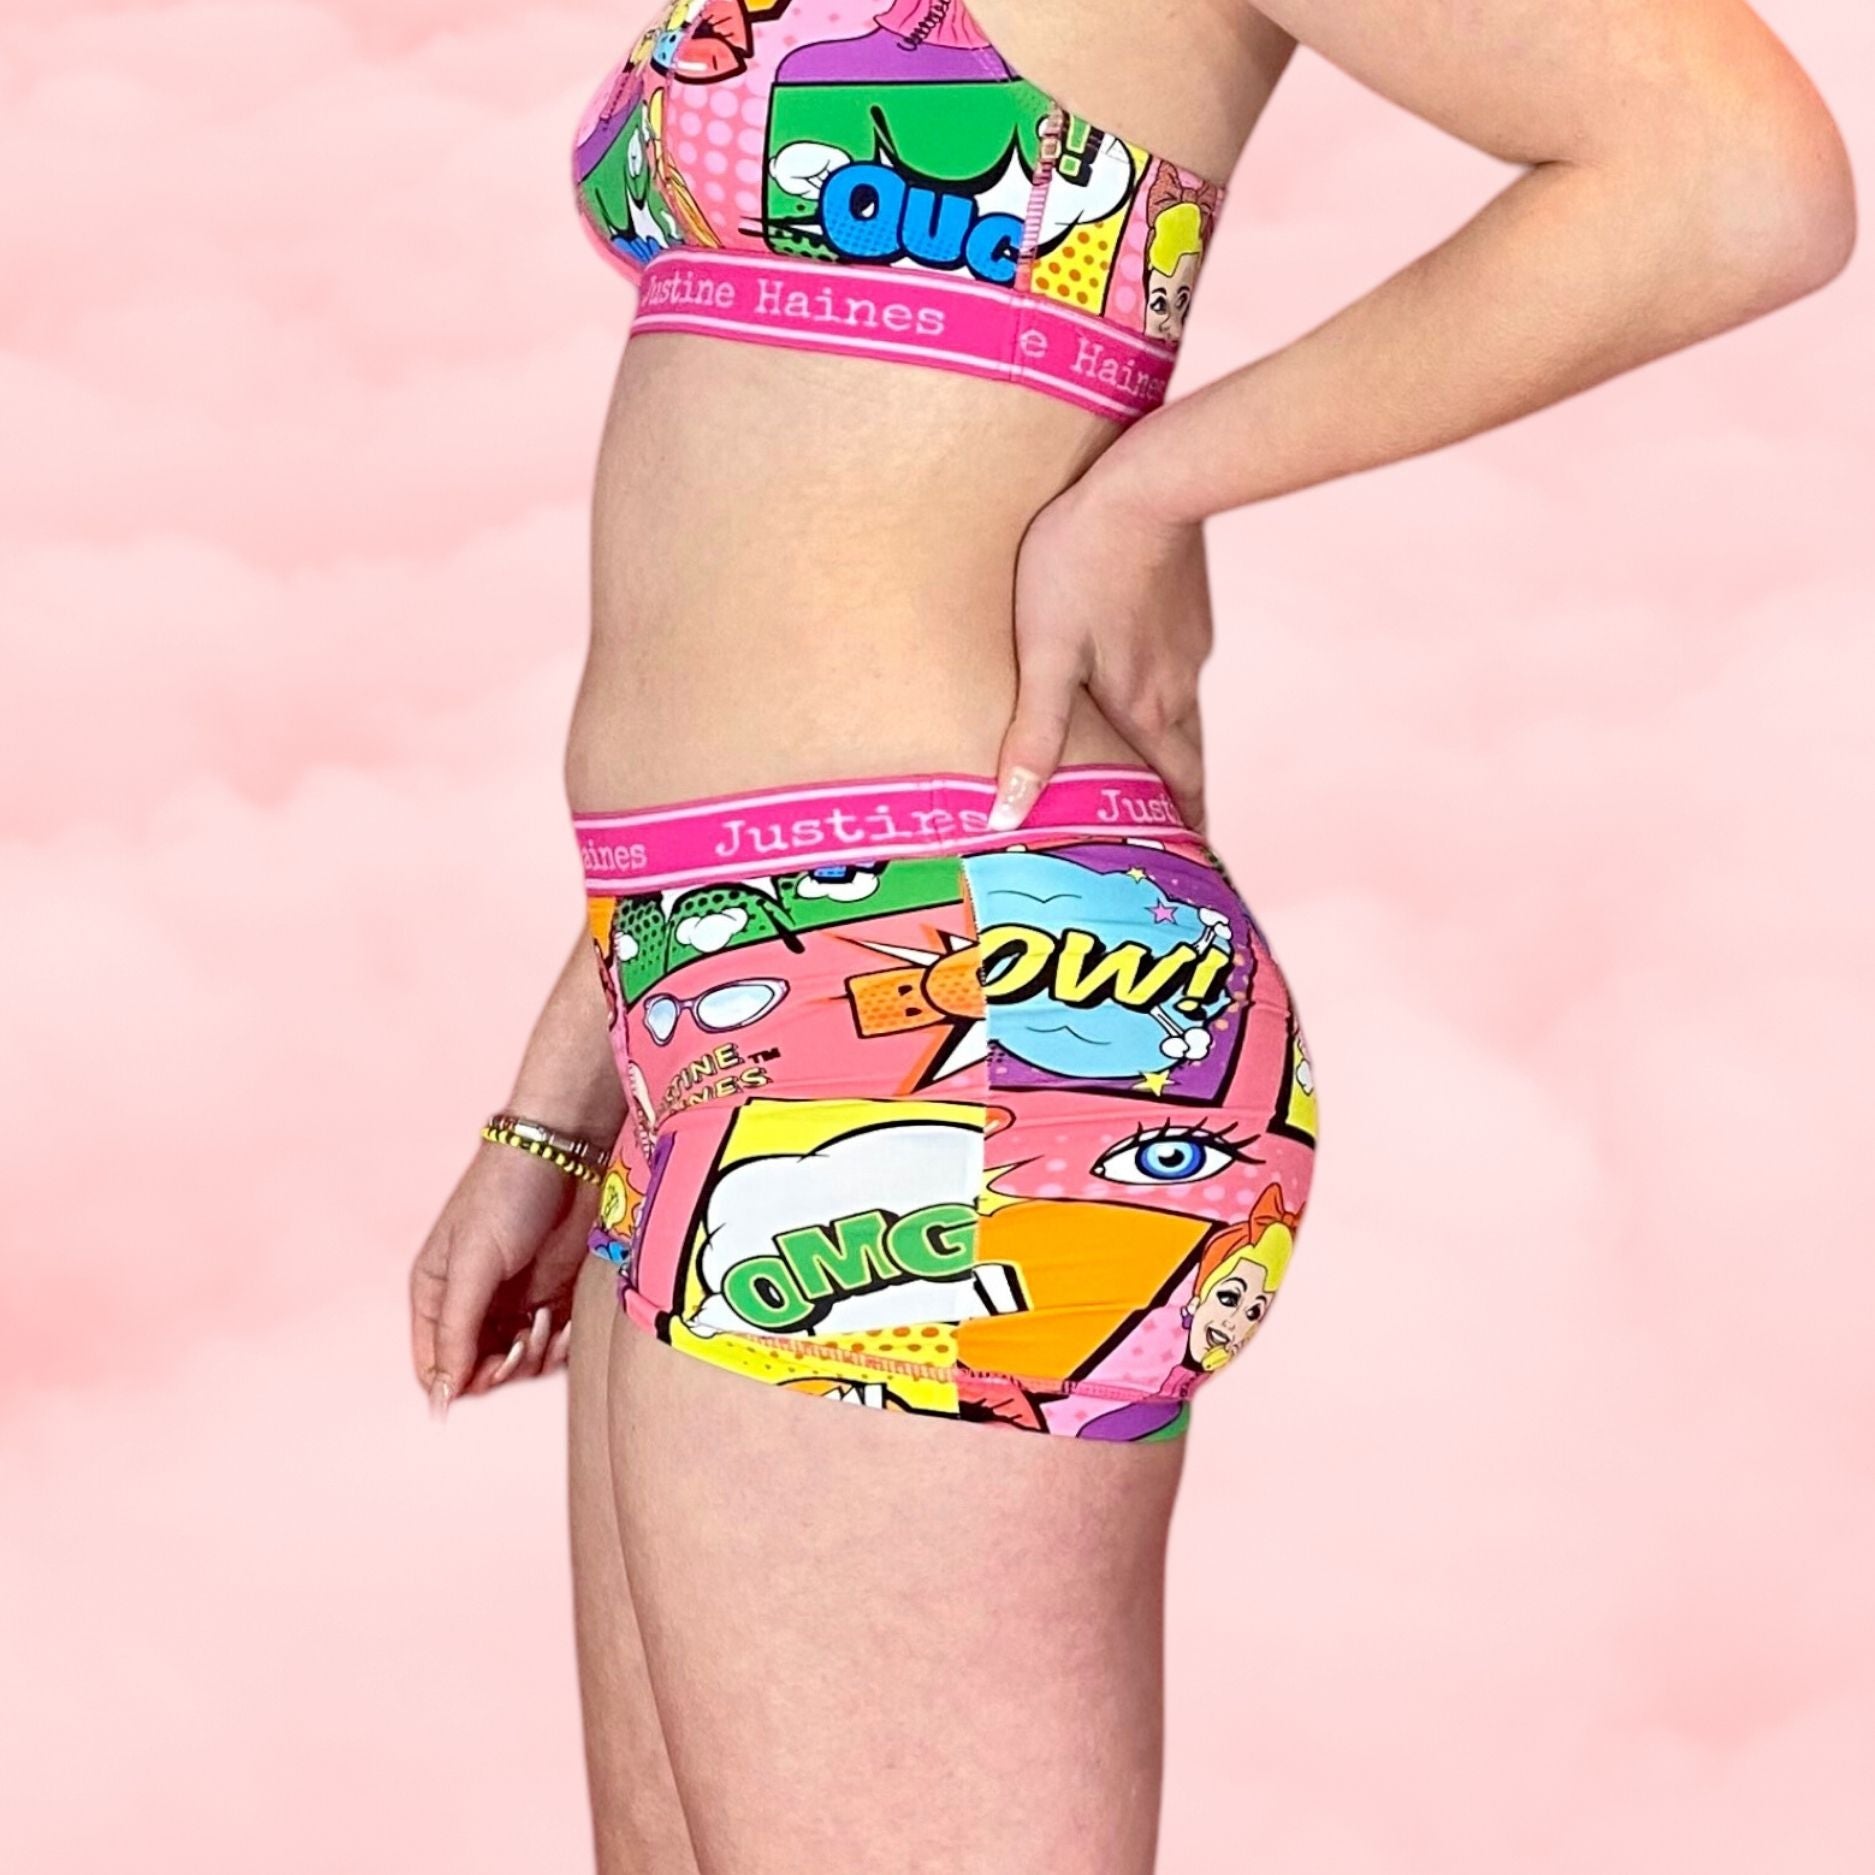 Low-Rise Period Panties in Hot Pink Pop Art